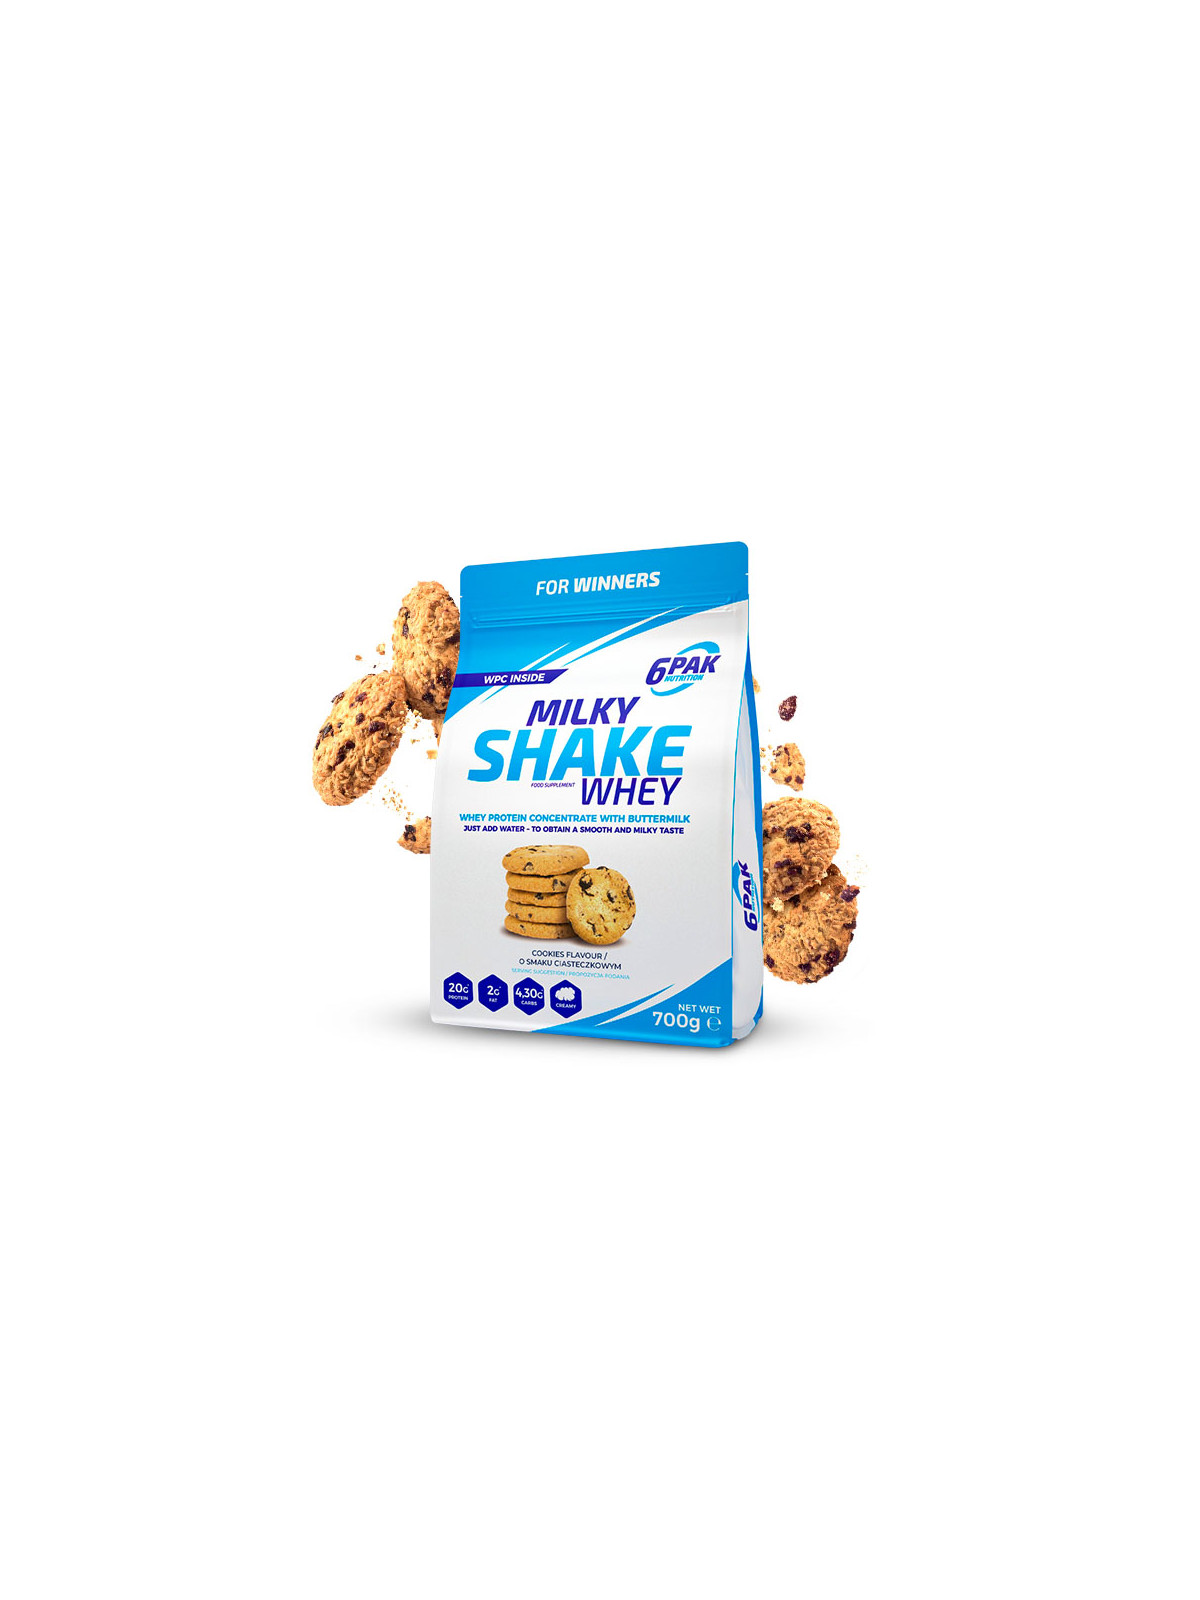 Odżywka białkowa Milky Shake Whey - 700g - Cookies